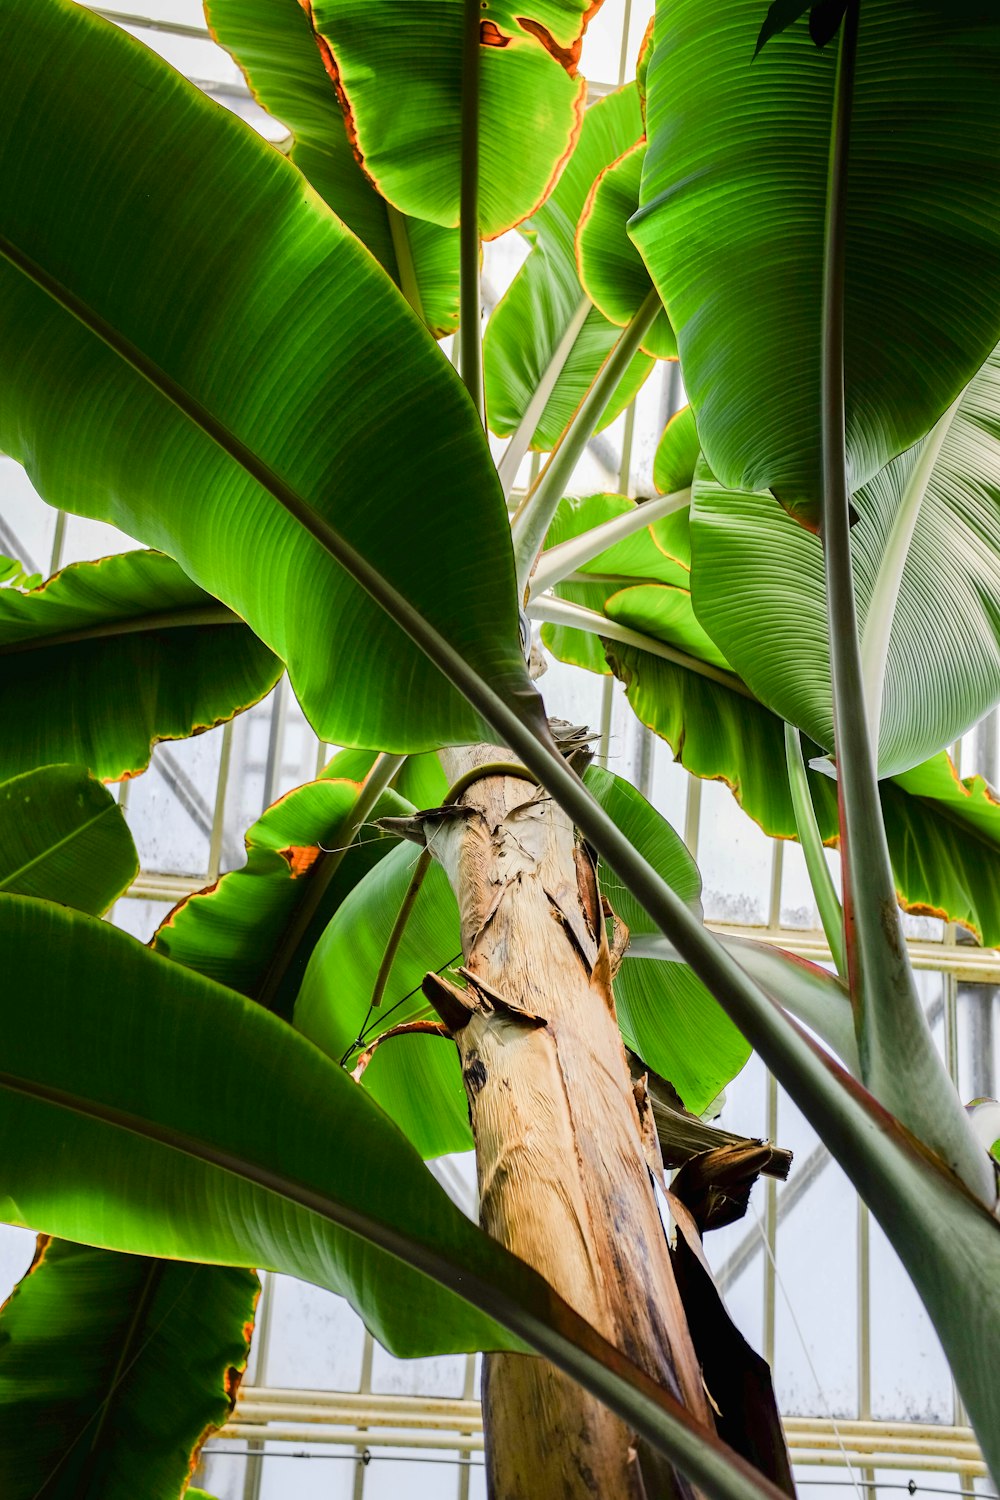 low angle photography of banana plant